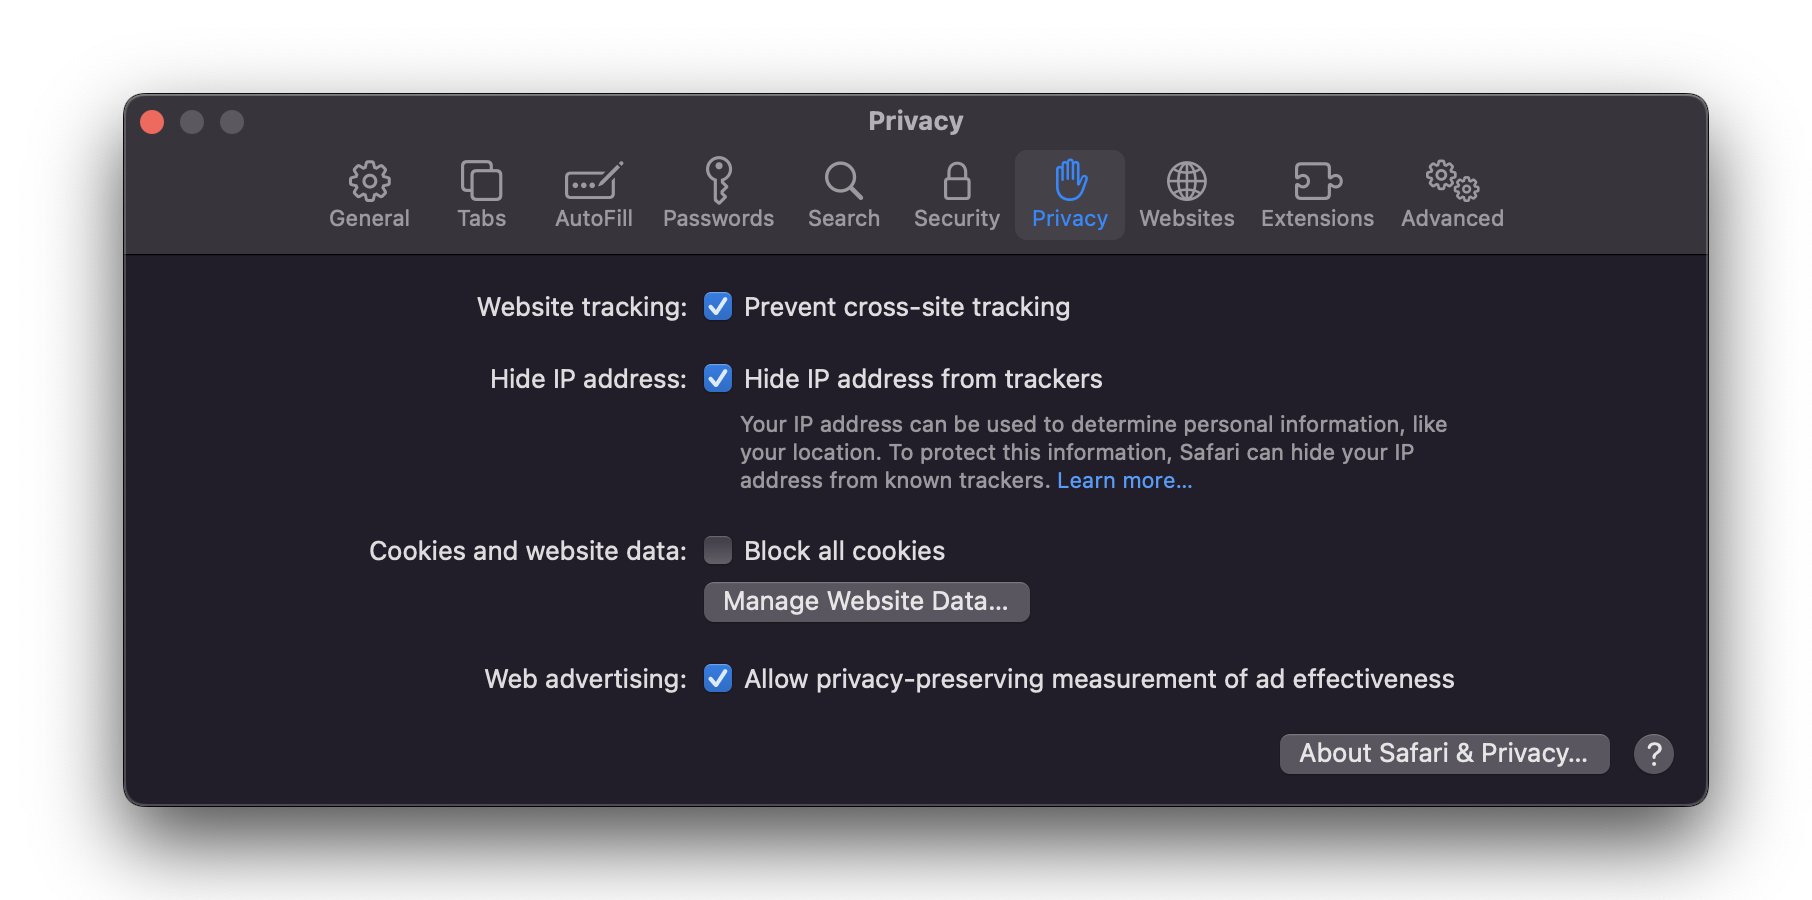 Security screen for Safari